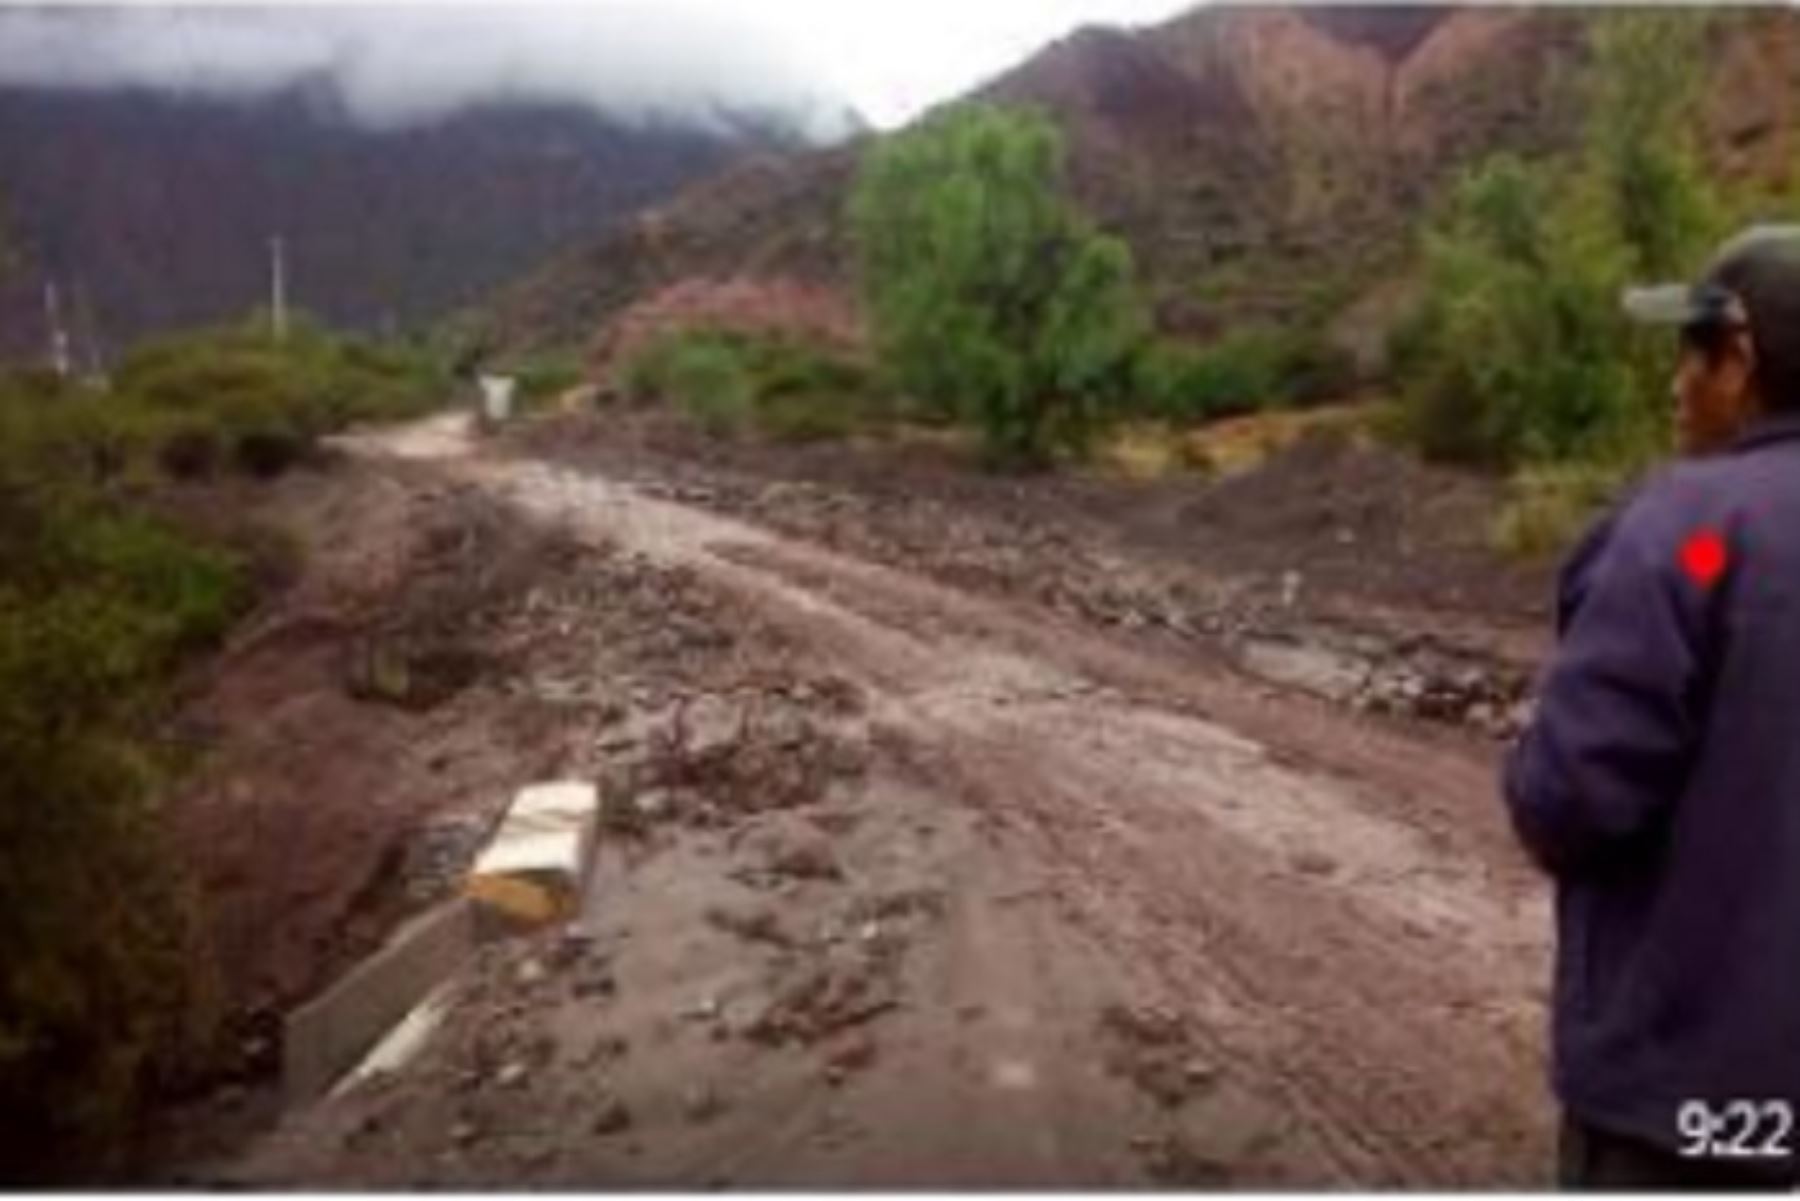 Debido a las lluvias constantes en la región Huancavelica, se produjo un deslizamiento de tierra y lodo afectando vías de comunicación, a la altura del anexo Pucatoro, en el kilómetro 302 al 310 de la carretera Huancayo – Ayacucho, en el distrito de San Miguel de Mayocc, provincia de Churcampa, por lo que el tránsito sigue restringido solo para los vehículos menores.